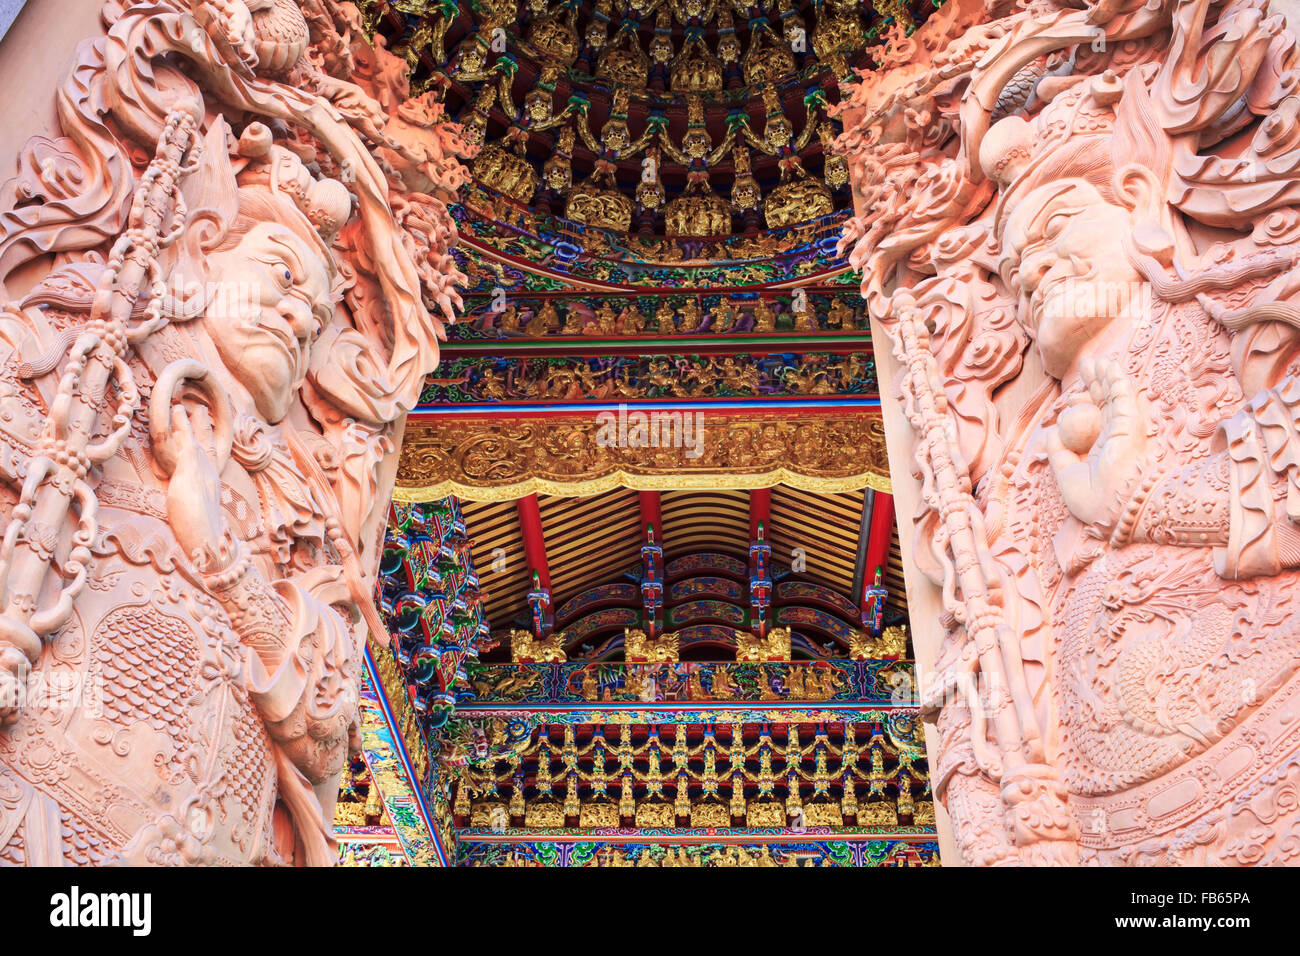 Talla de madera de la puerta del templo budista en lugares públicos de culto budista Foto de stock